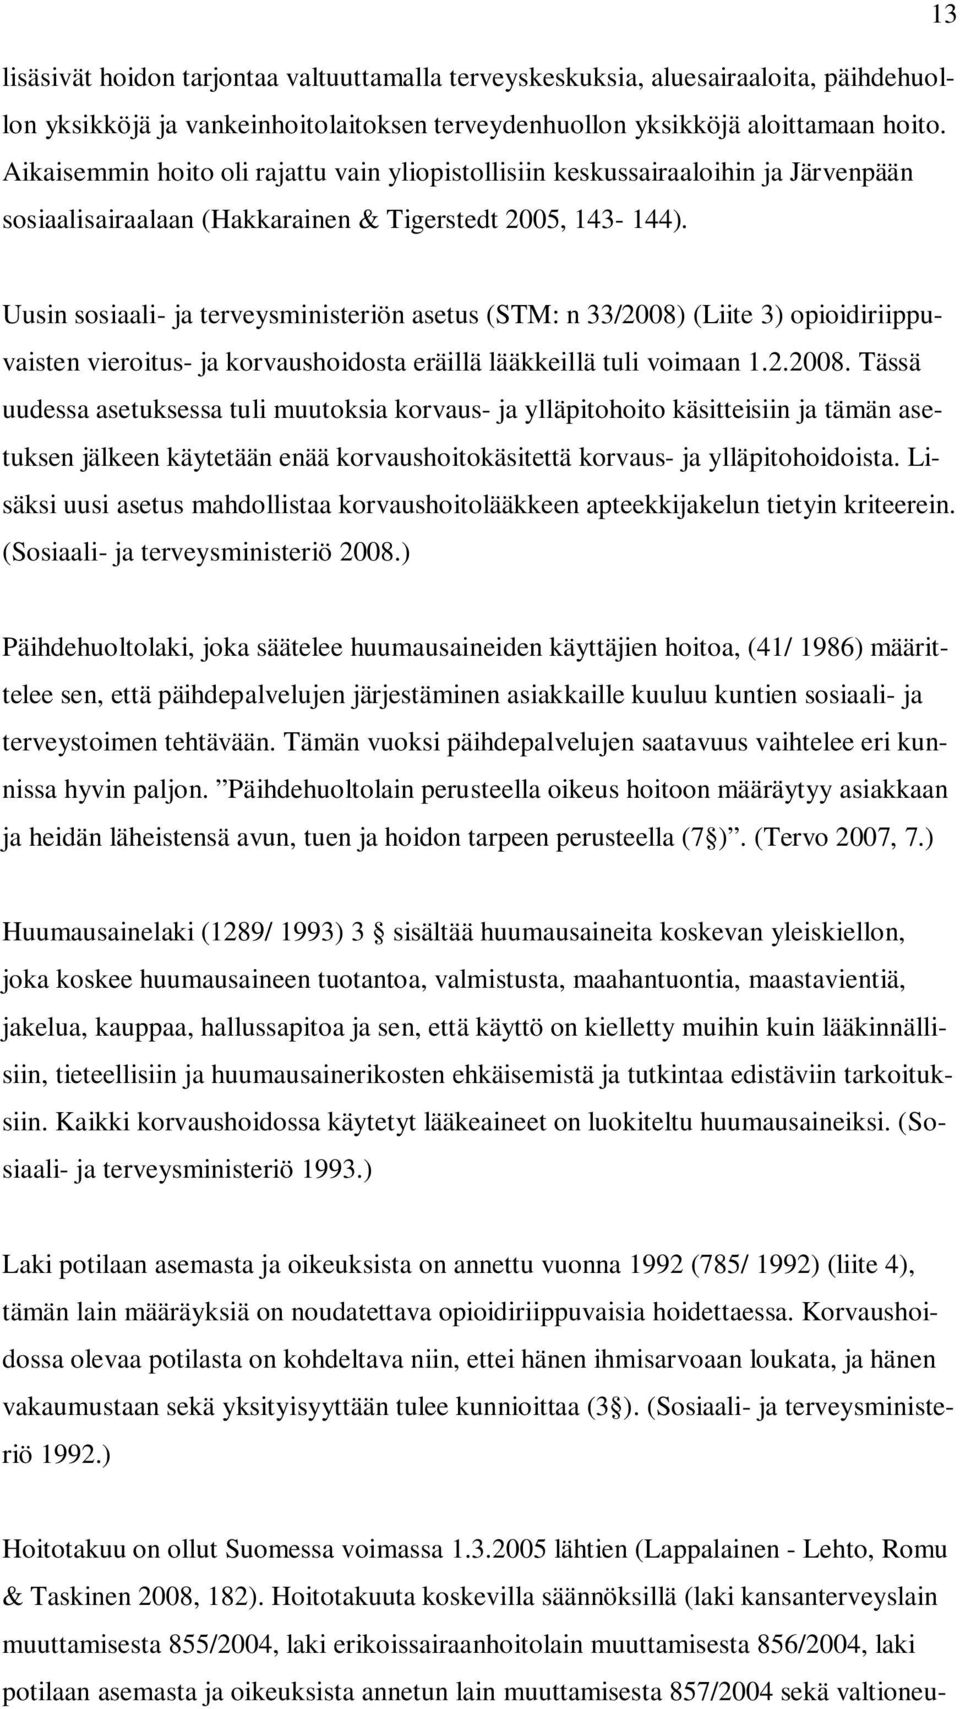 Uusin sosiaali- ja terveysministeriön asetus (STM: n 33/2008)